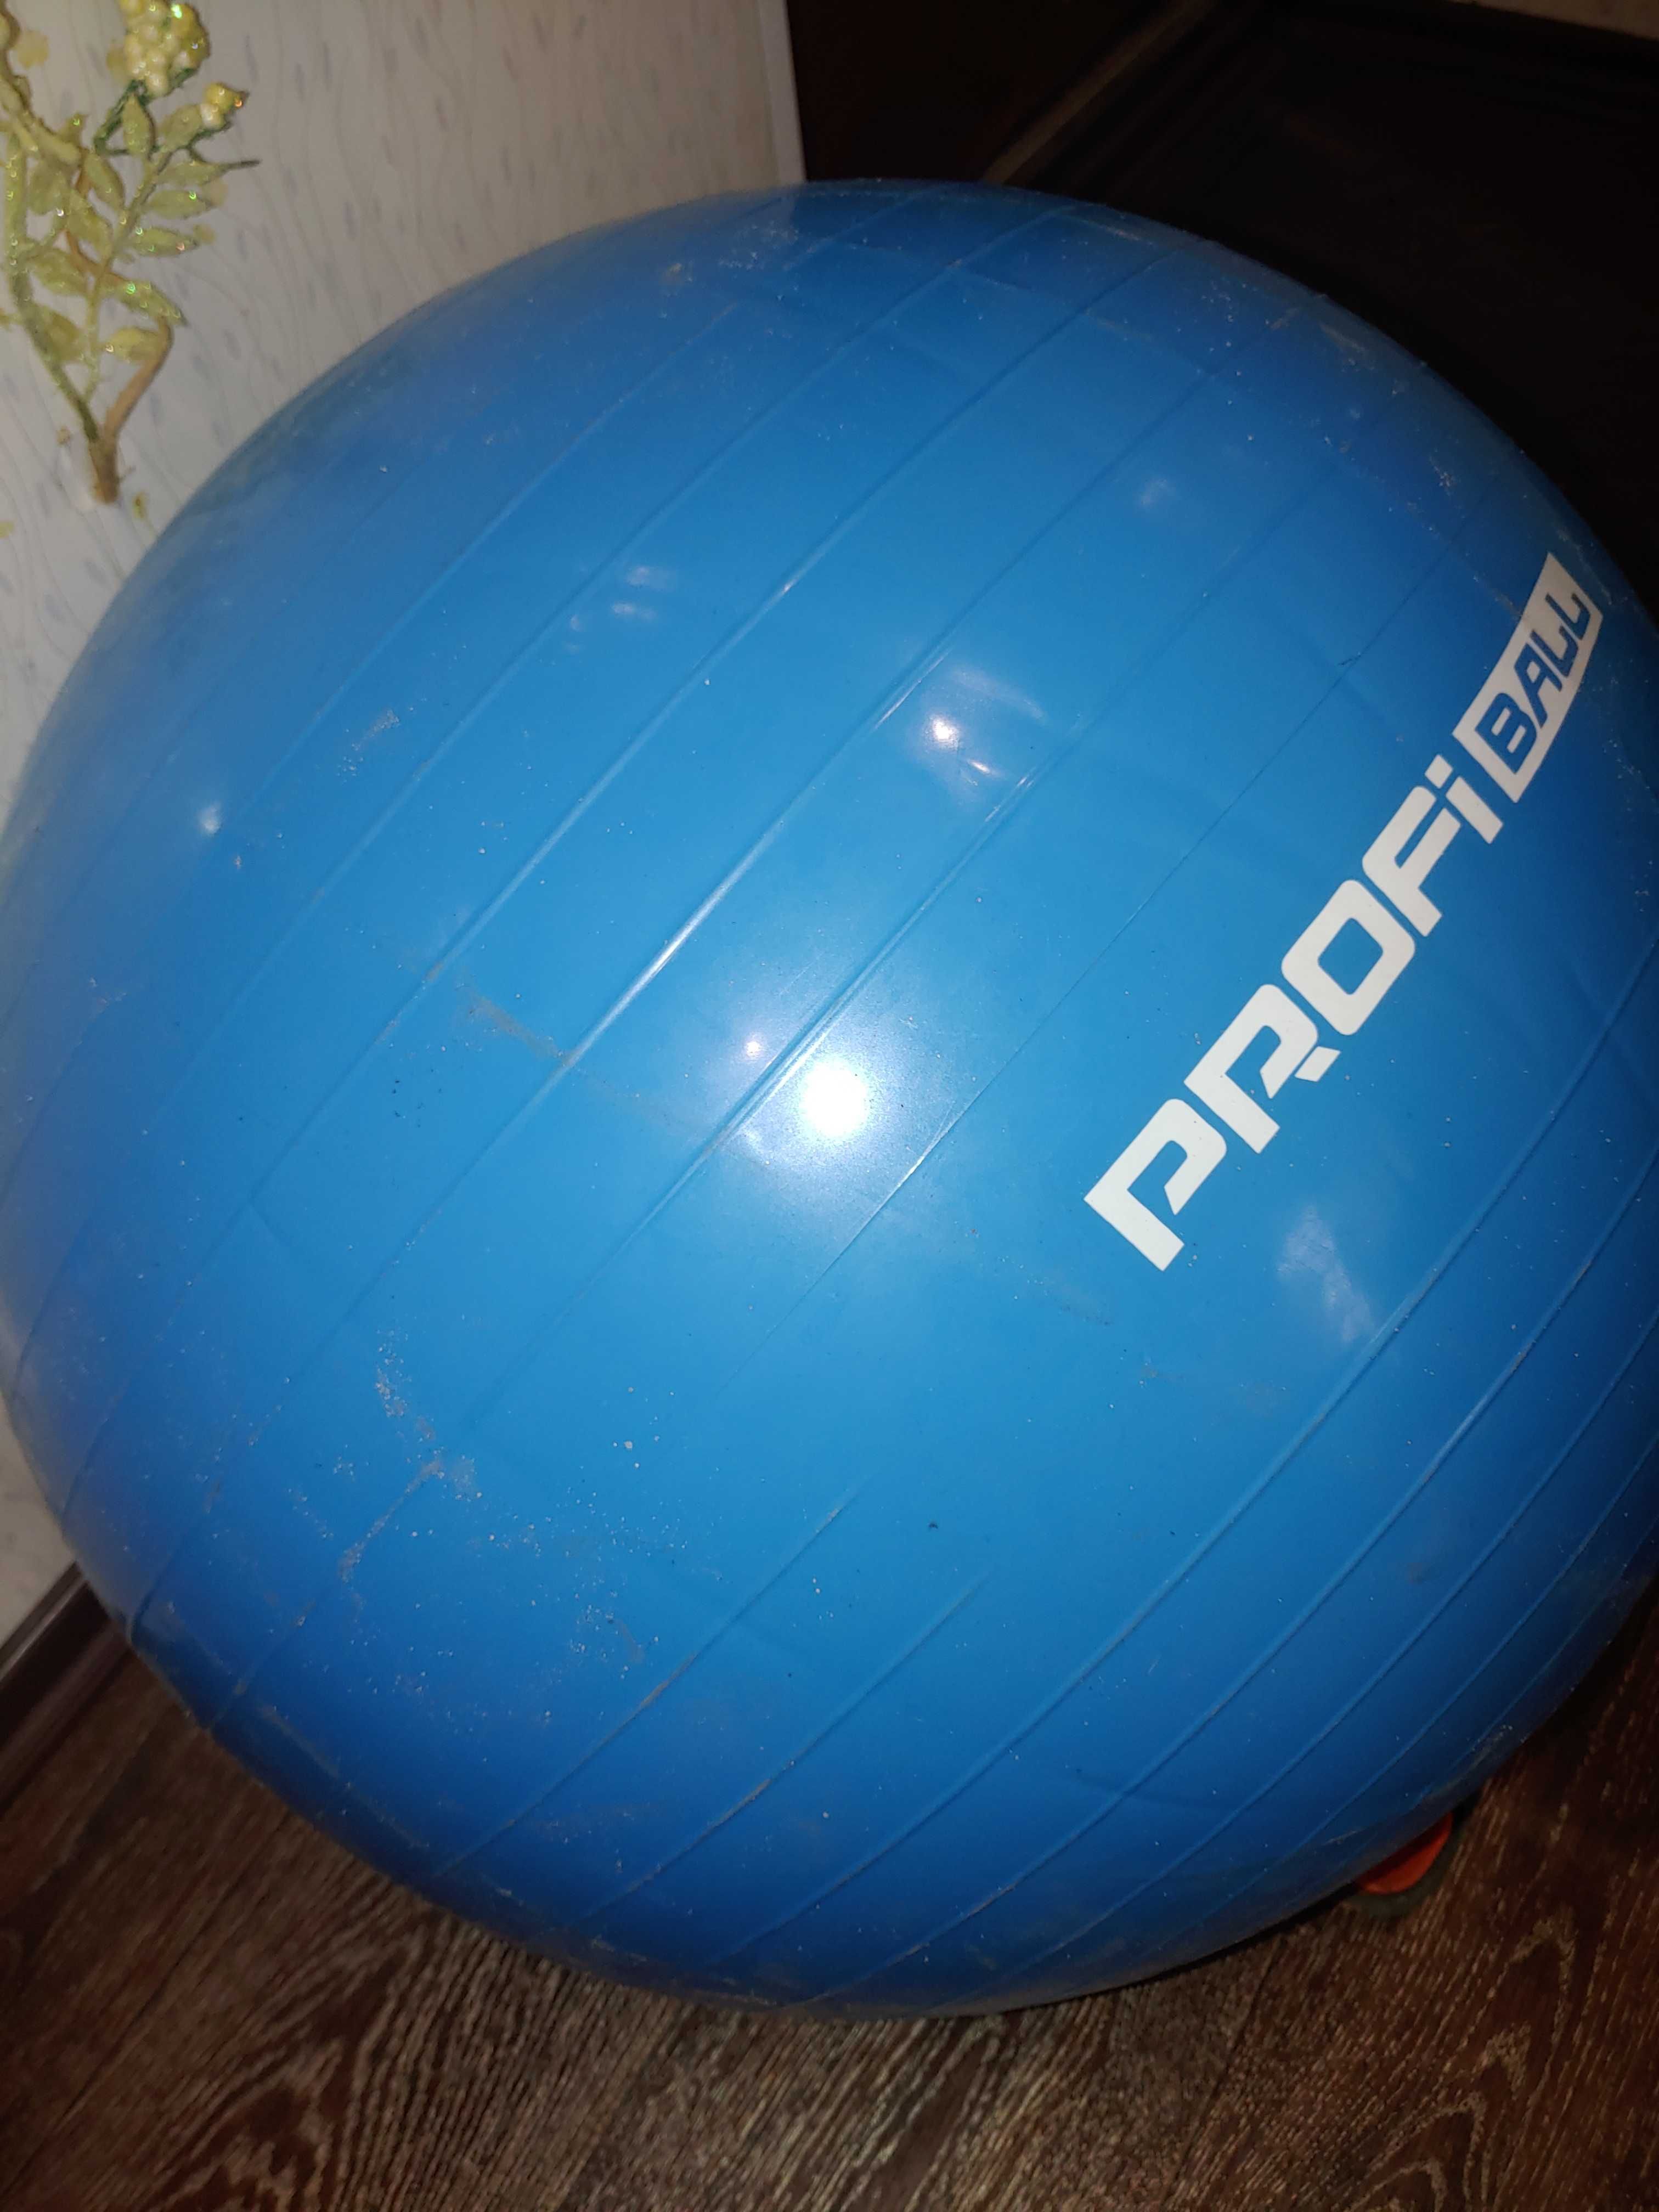 Мяч для фитнеса Profi M 0277-1 75 см (Синий)